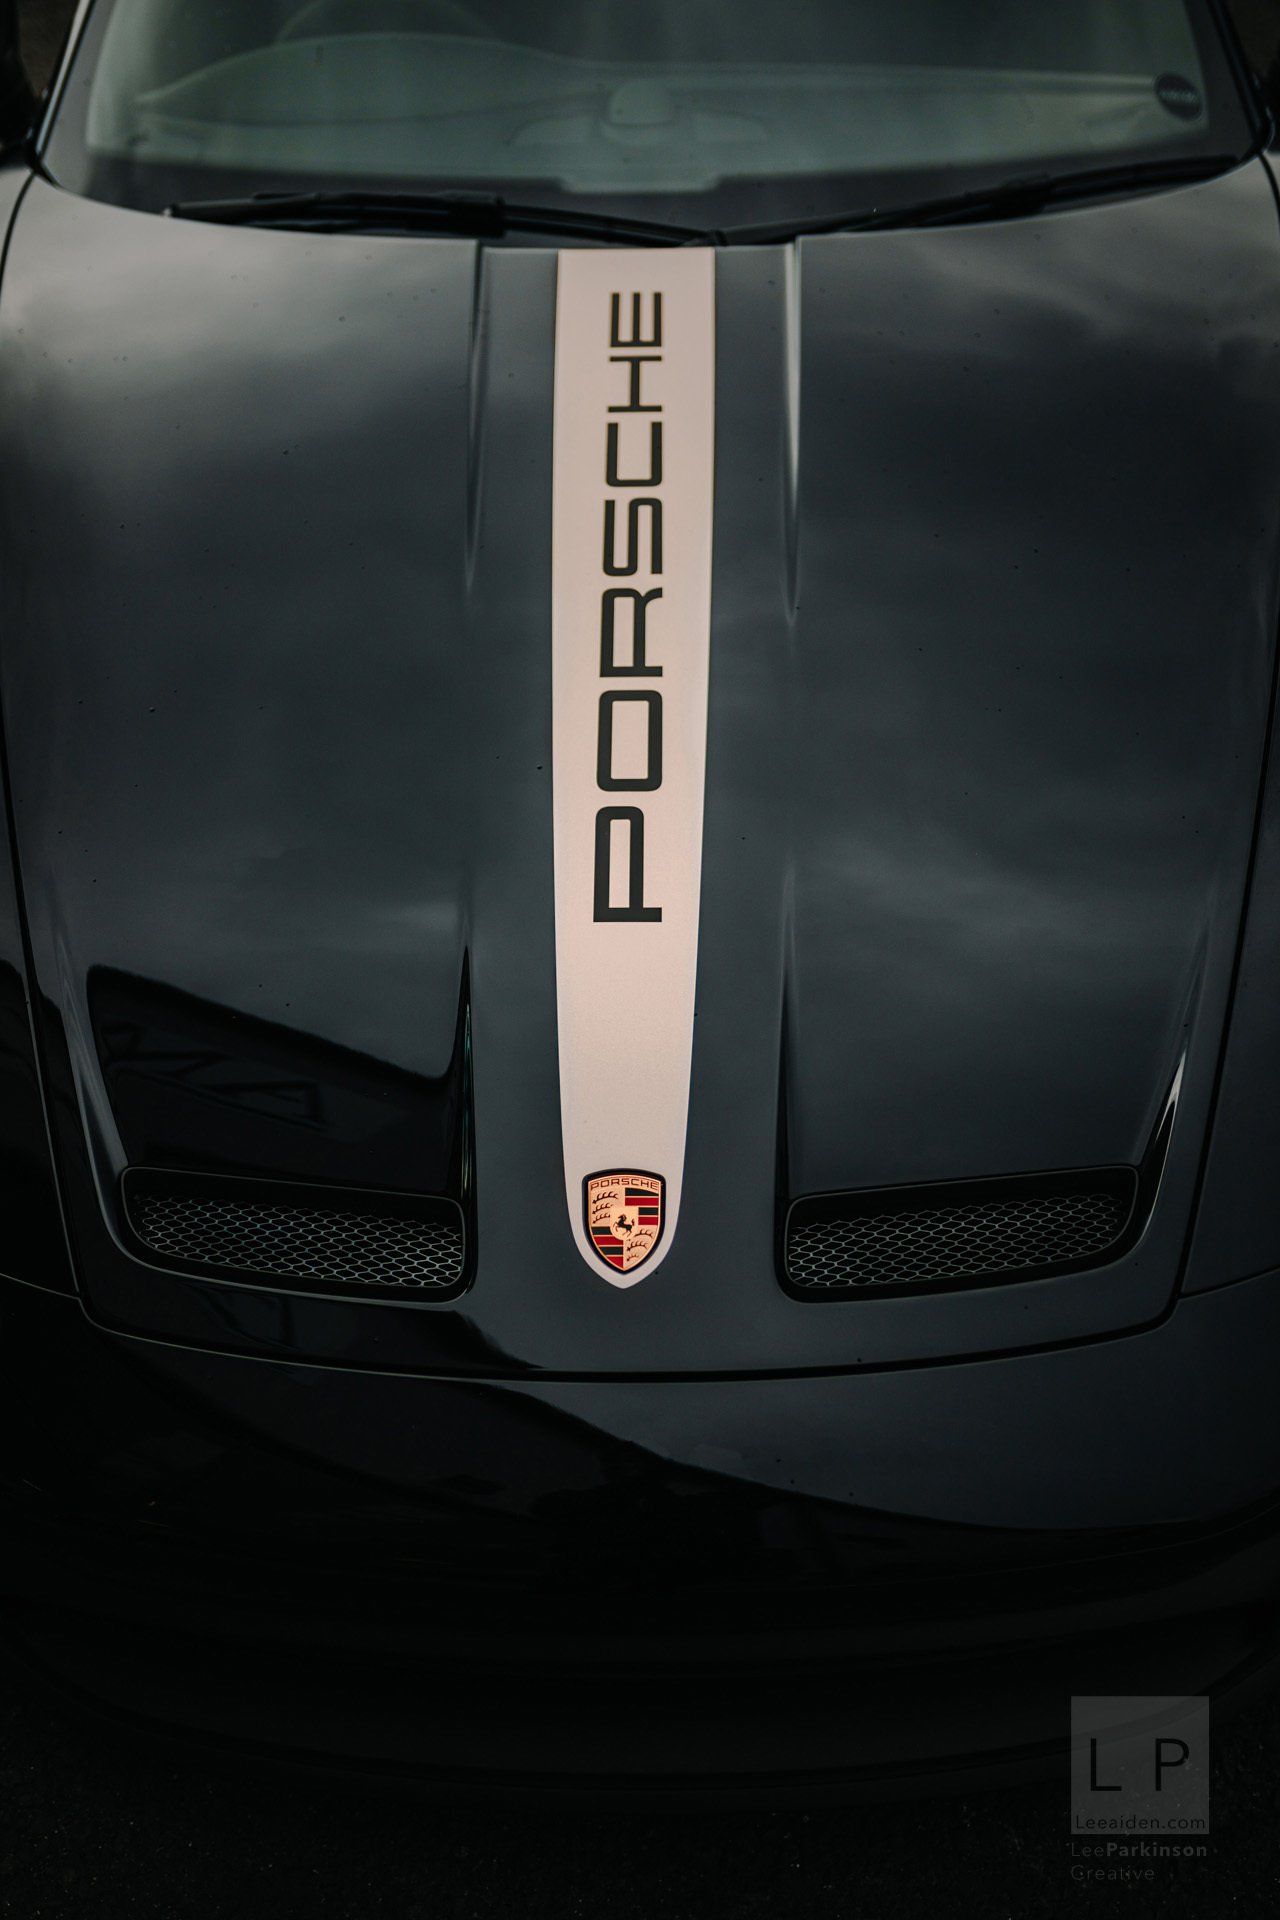 Porsche 911 992 GT3 by Lancashire based Automotive Photographer